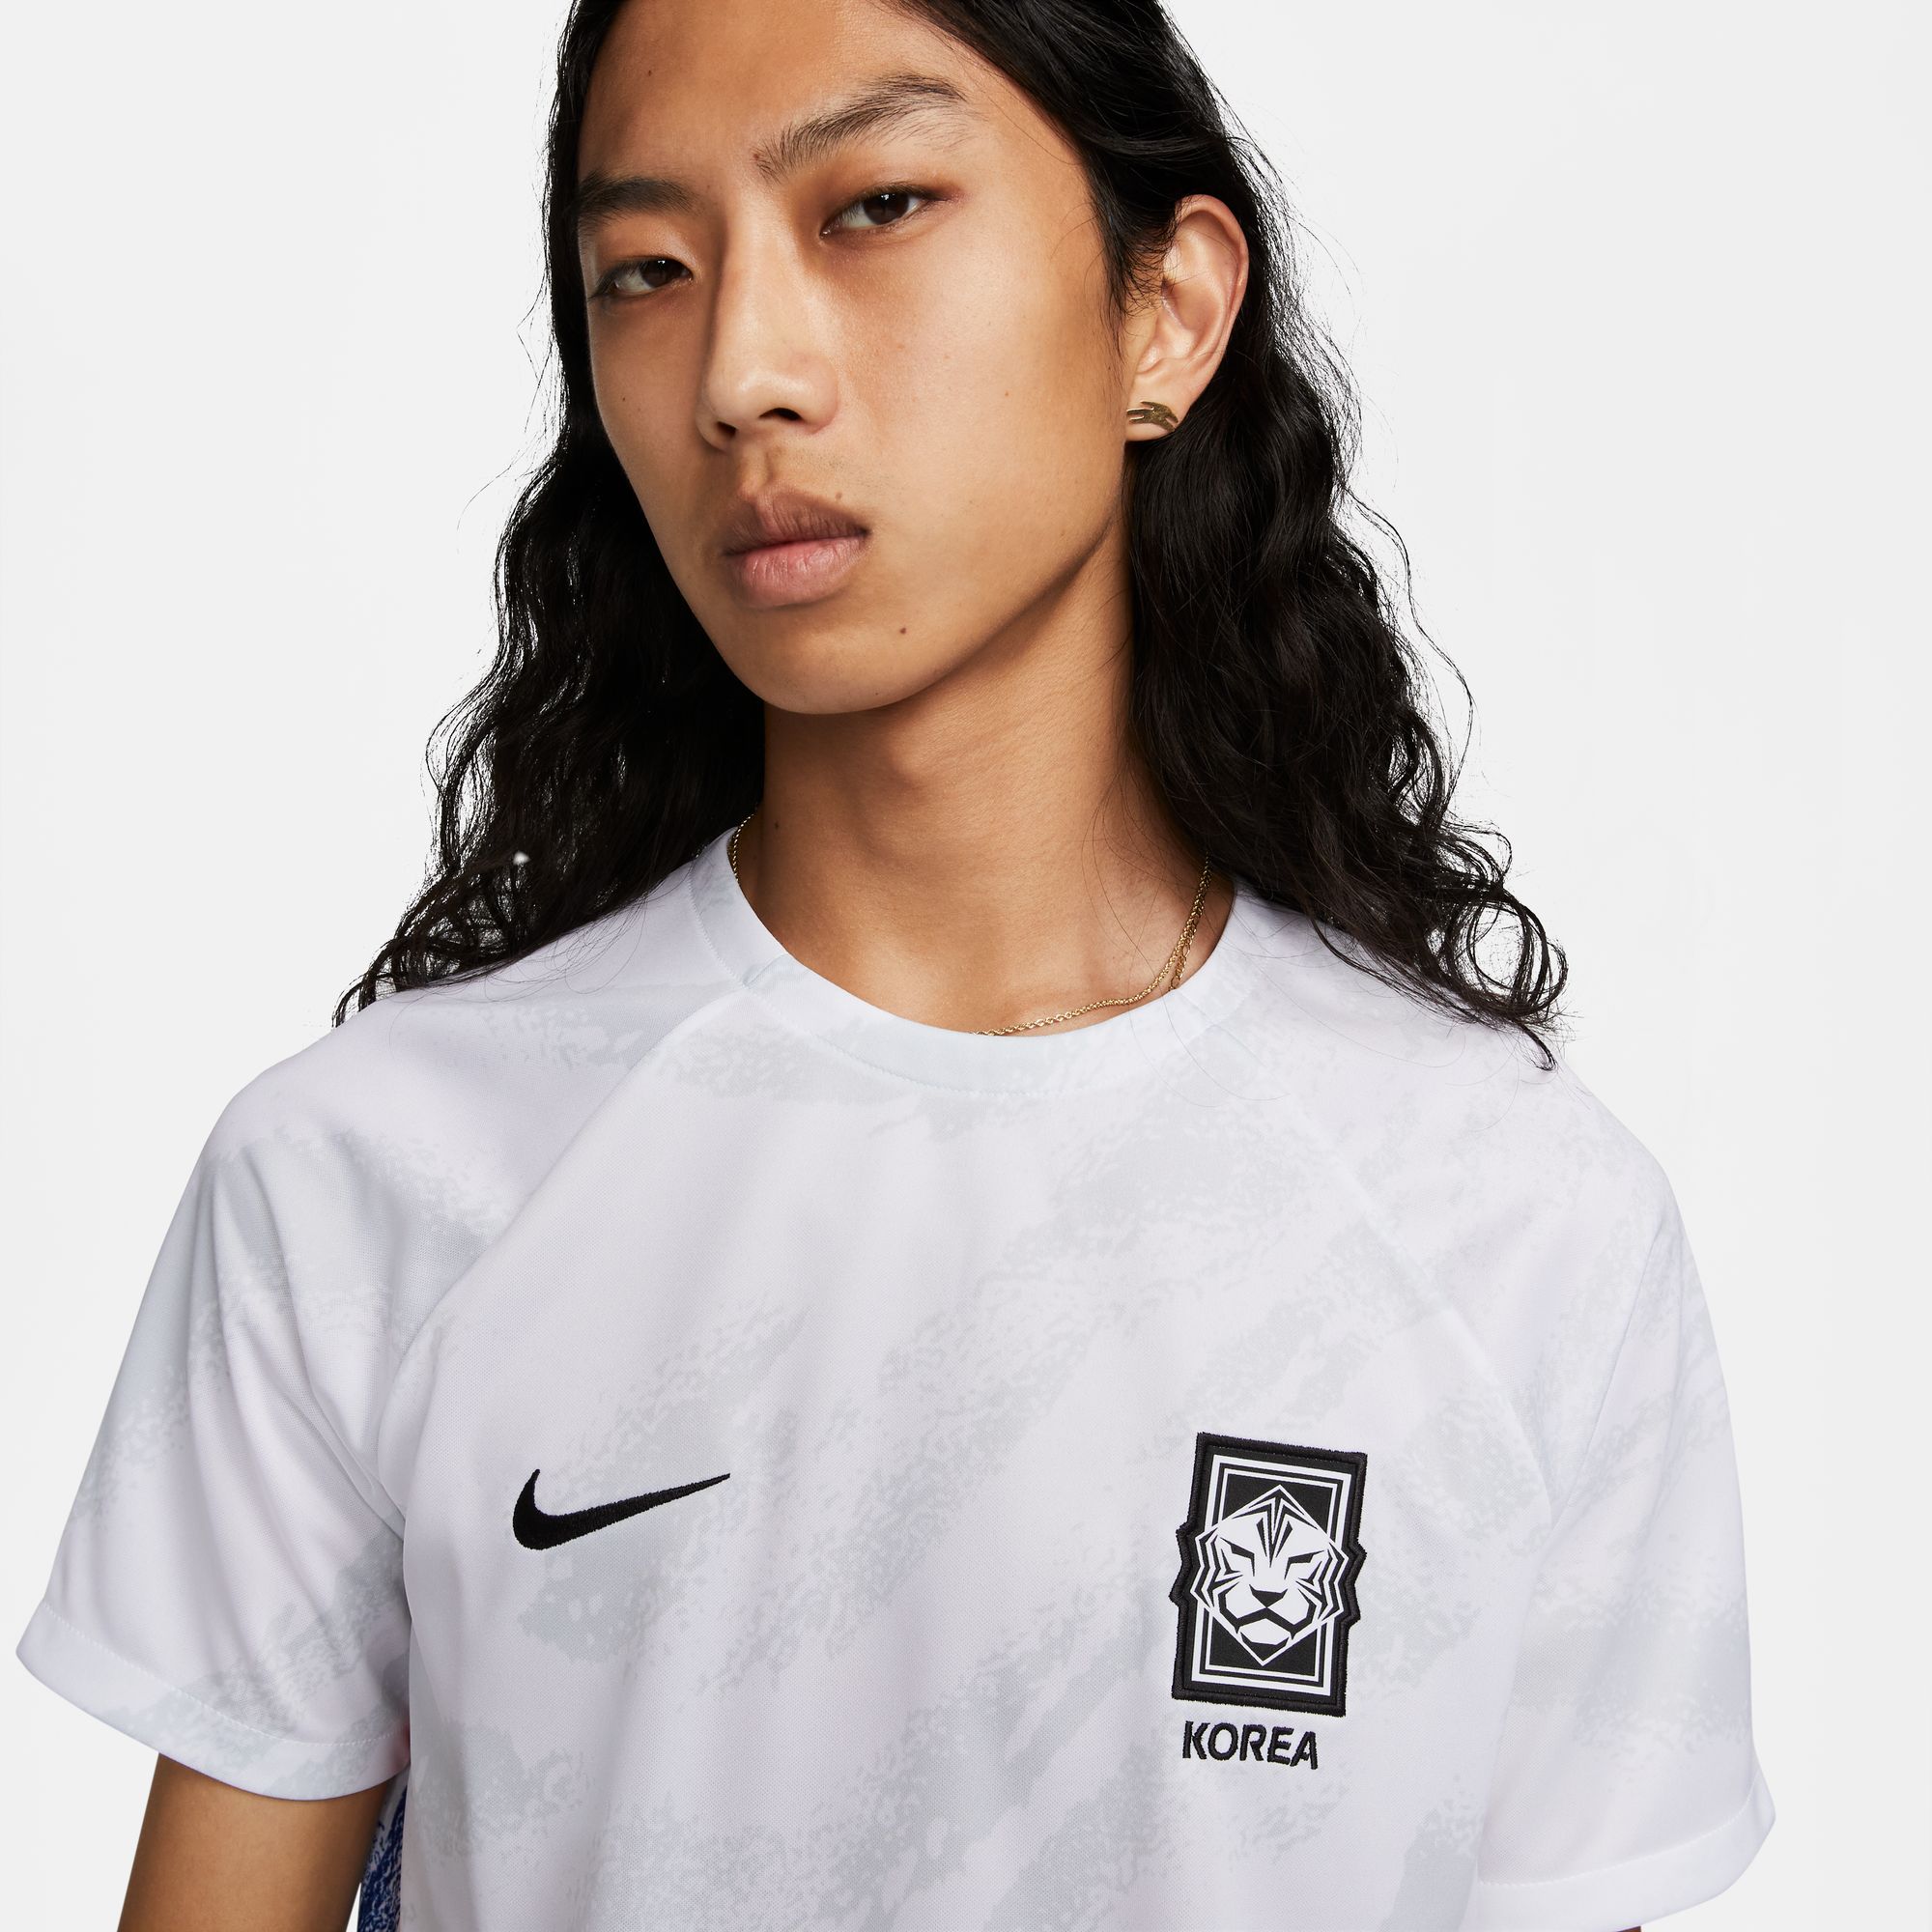 SZ M, Nike Dri-Fit South Korea Zebra Soccer Jersey White